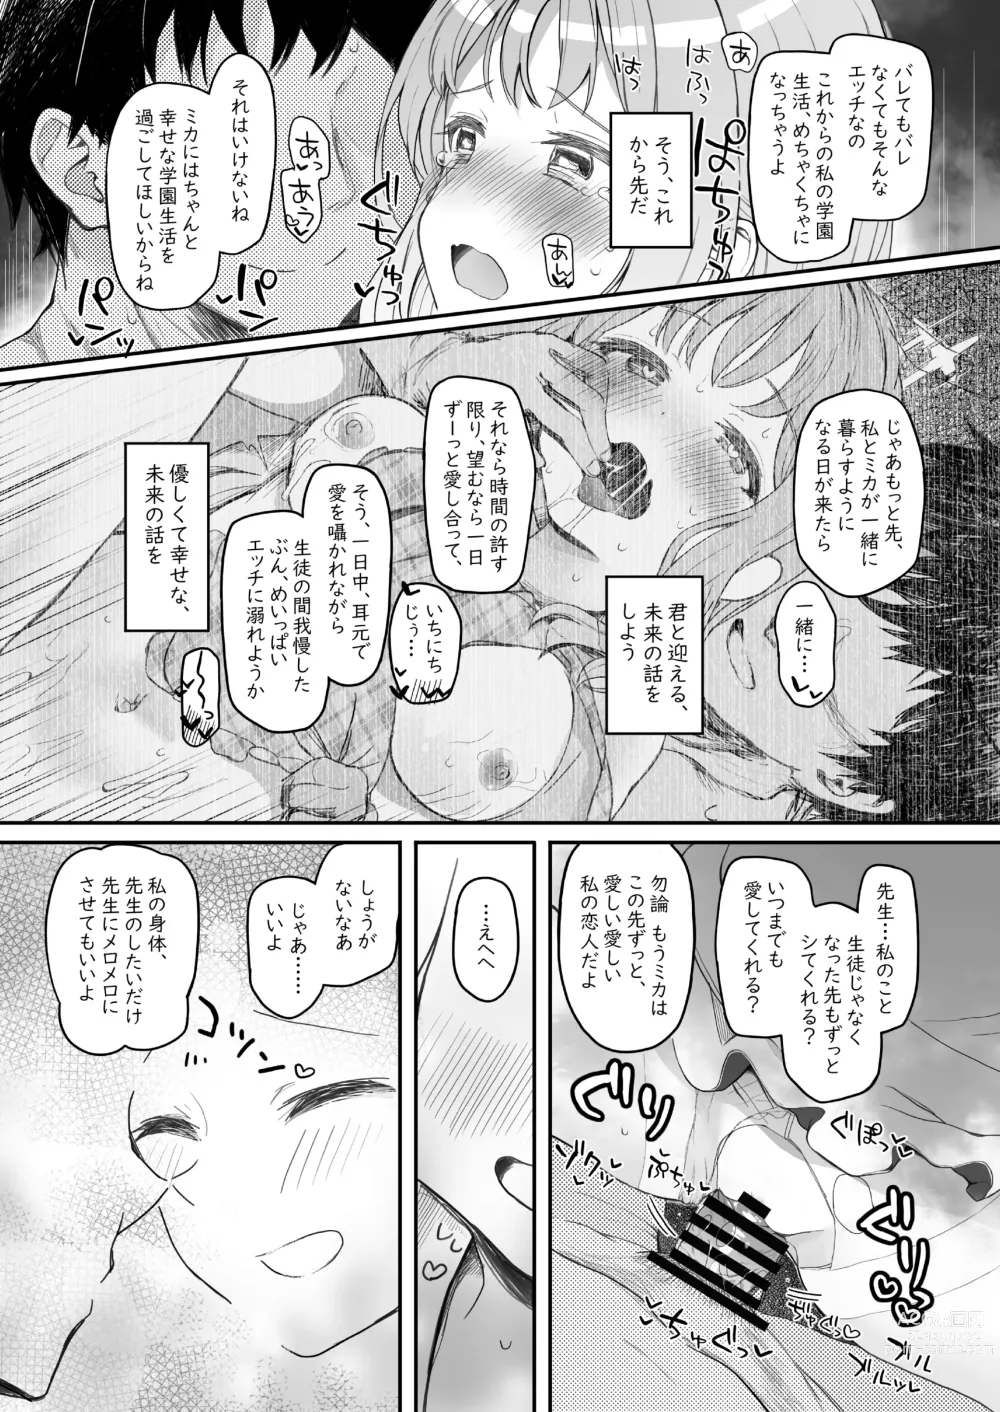 Page 59 of doujinshi Tenshi de Warui Ko DEAREST